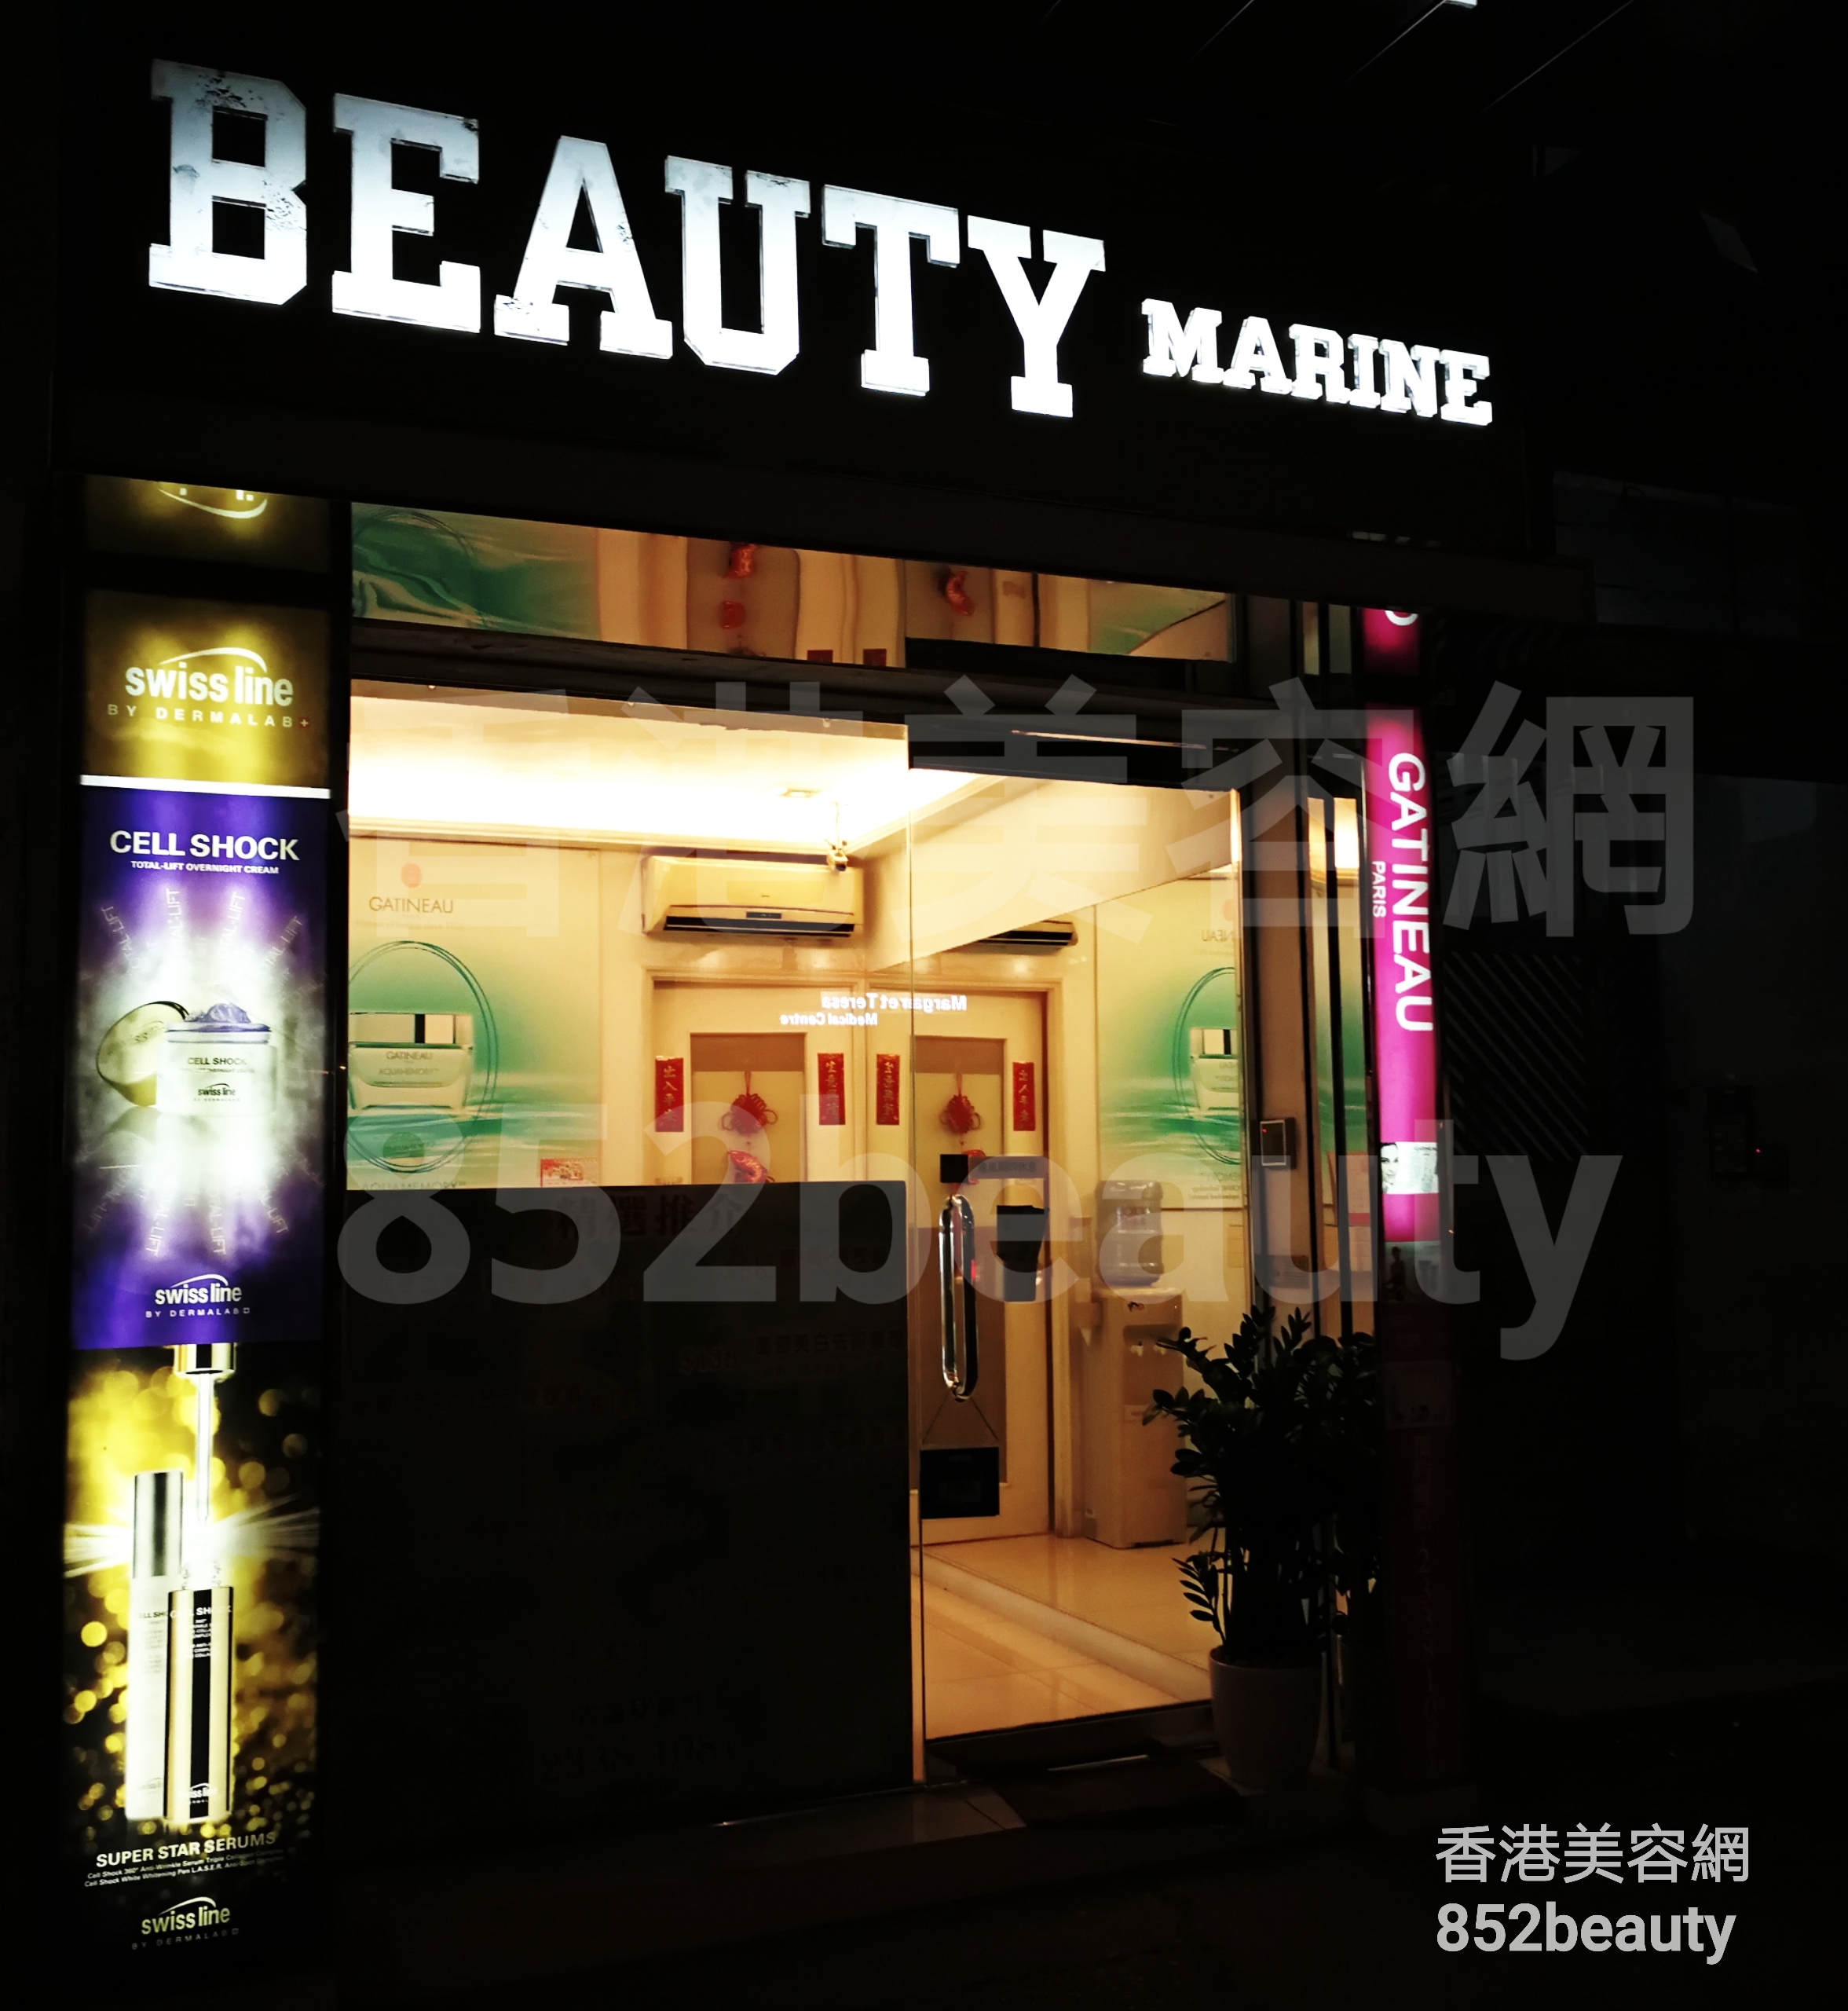 香港美容網 Hong Kong Beauty Salon 美容院 / 美容師: Beauty Marine